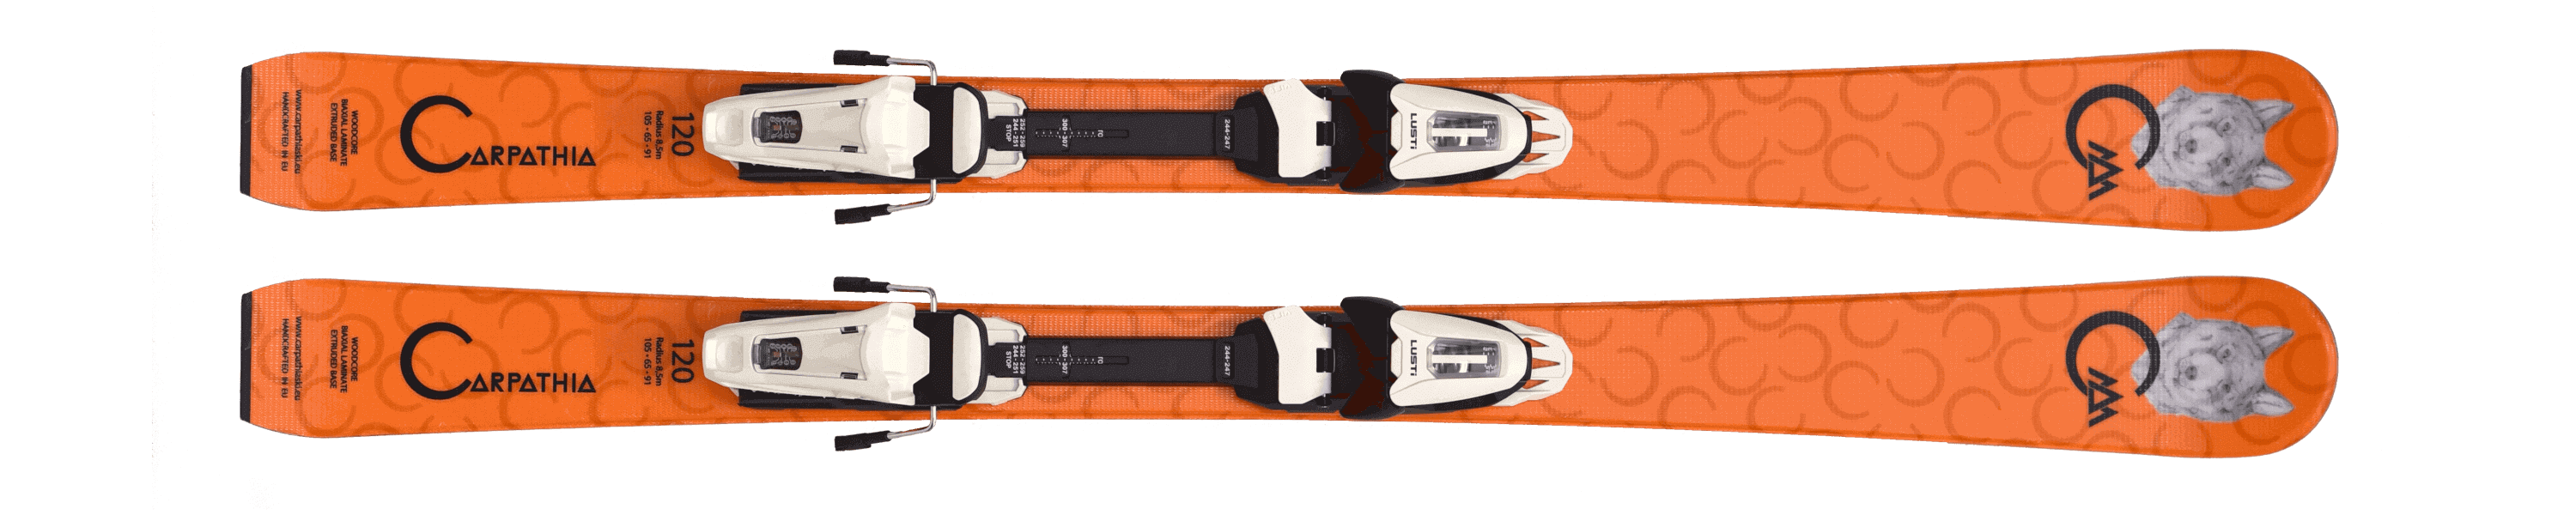 Oranžové lyže Carpathia Junior Lupus s vázáním